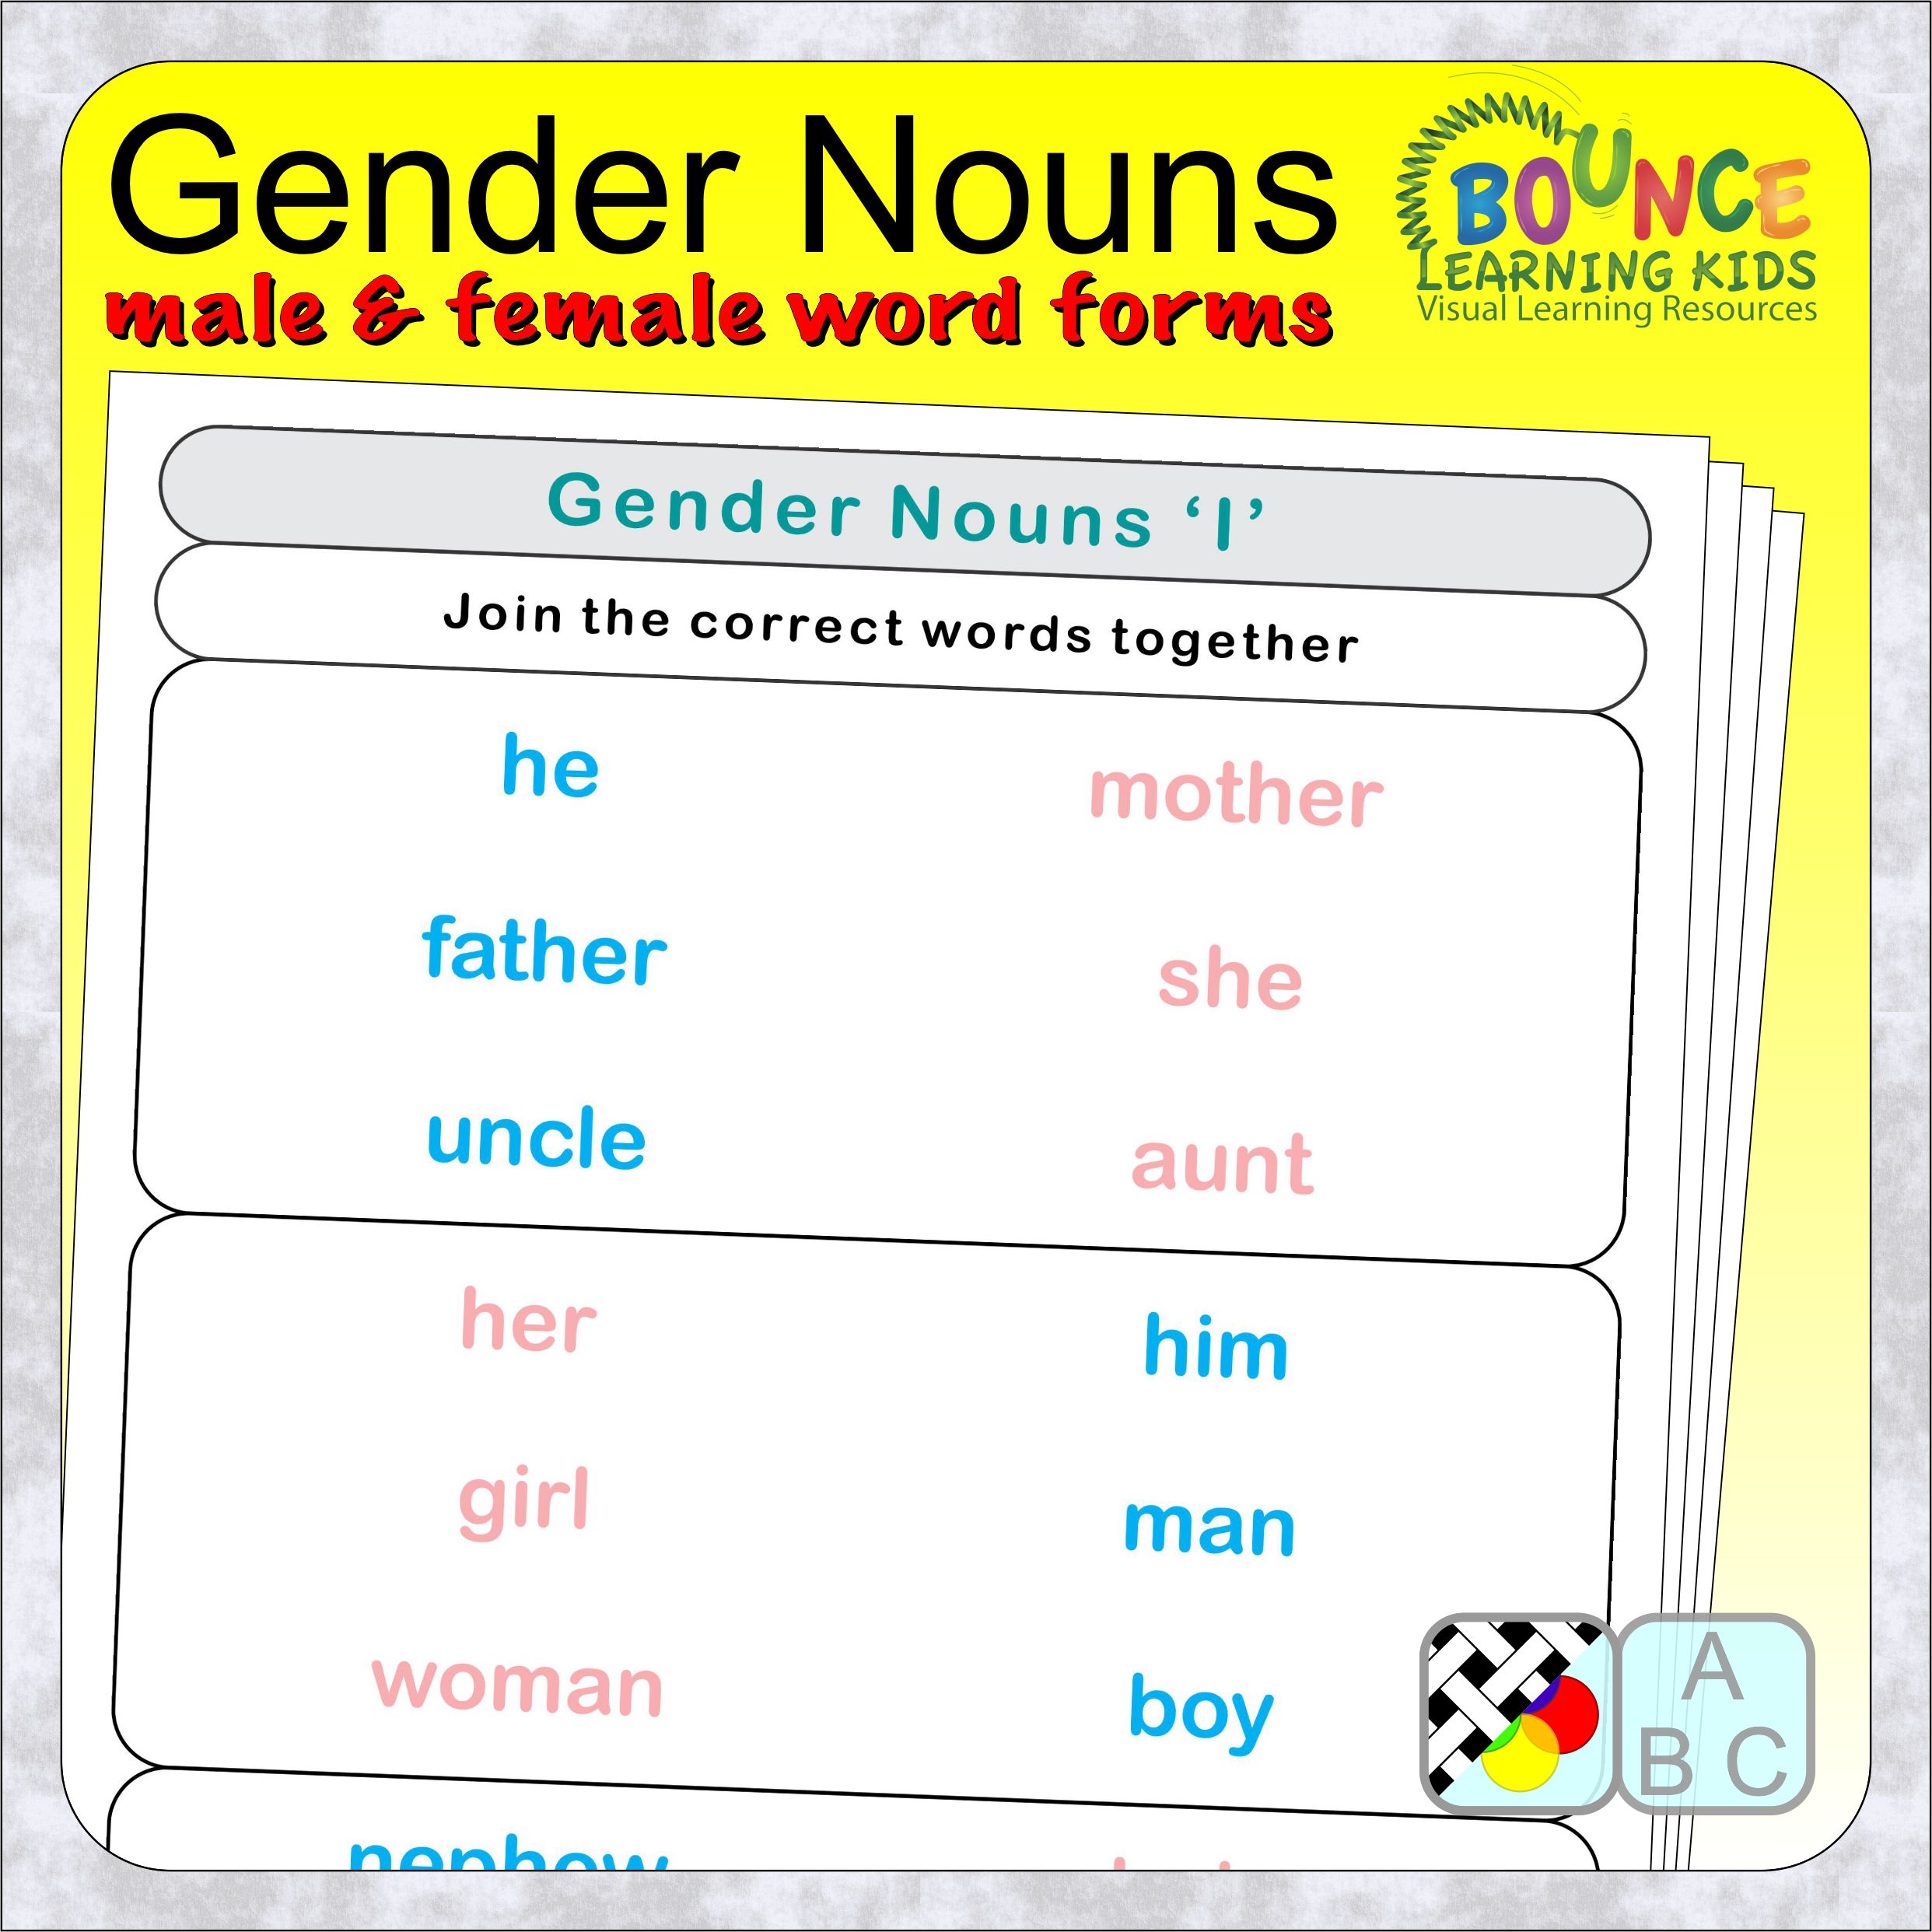 18 Practical Gender Nouns Worksheets For Download